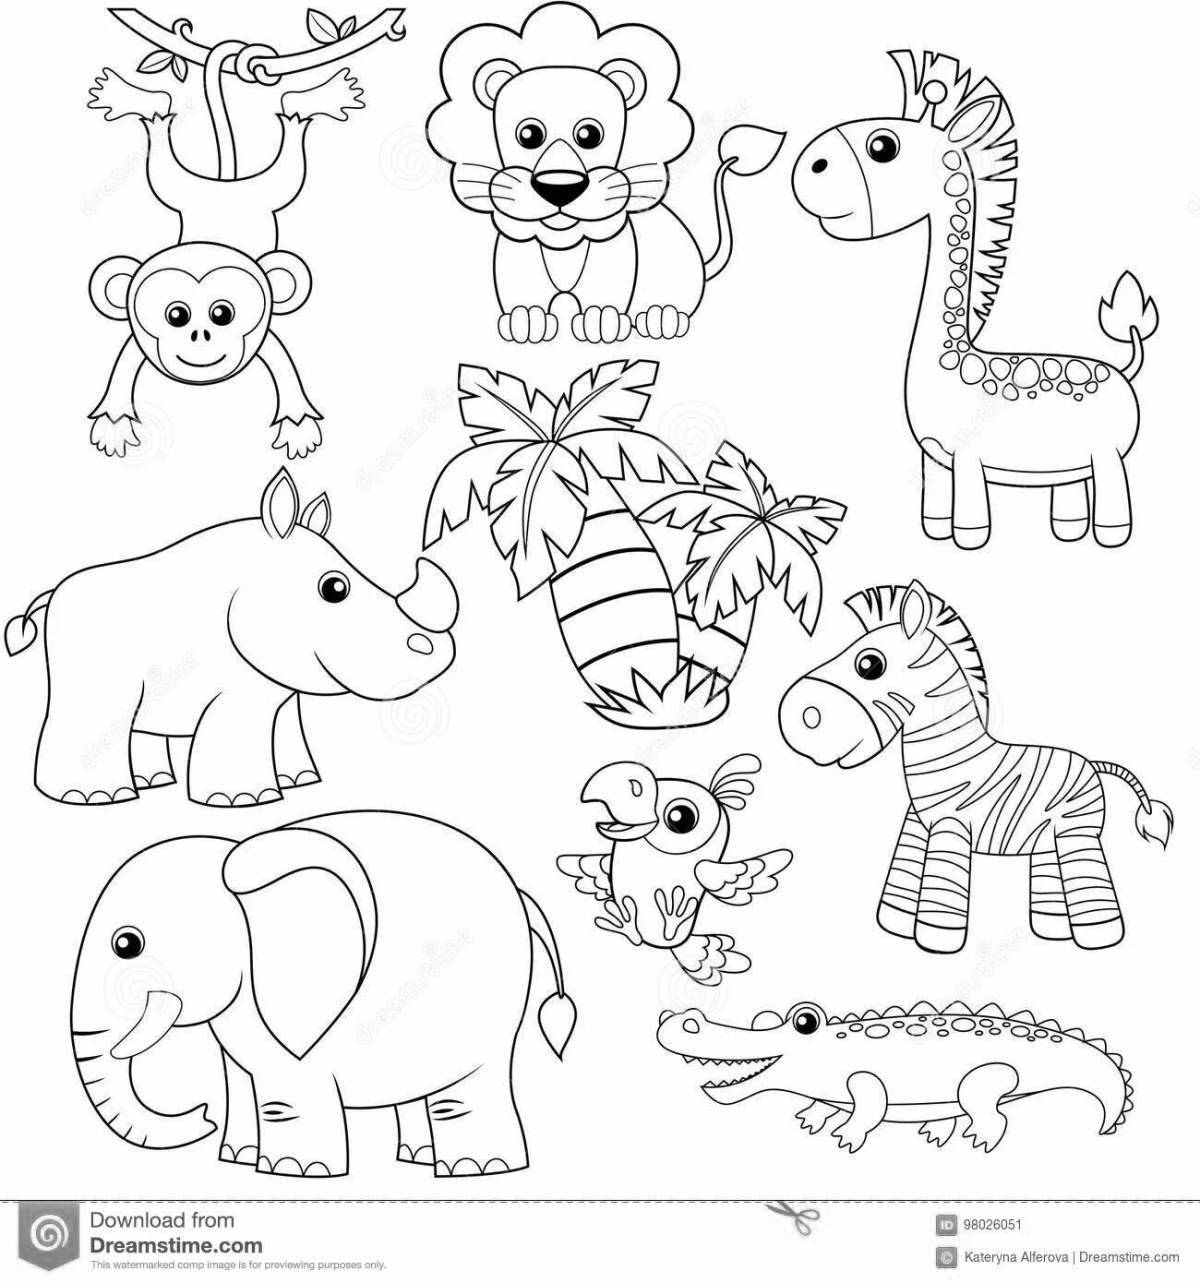 Уникальная страница раскраски африканских животных для детей 5-7 лет